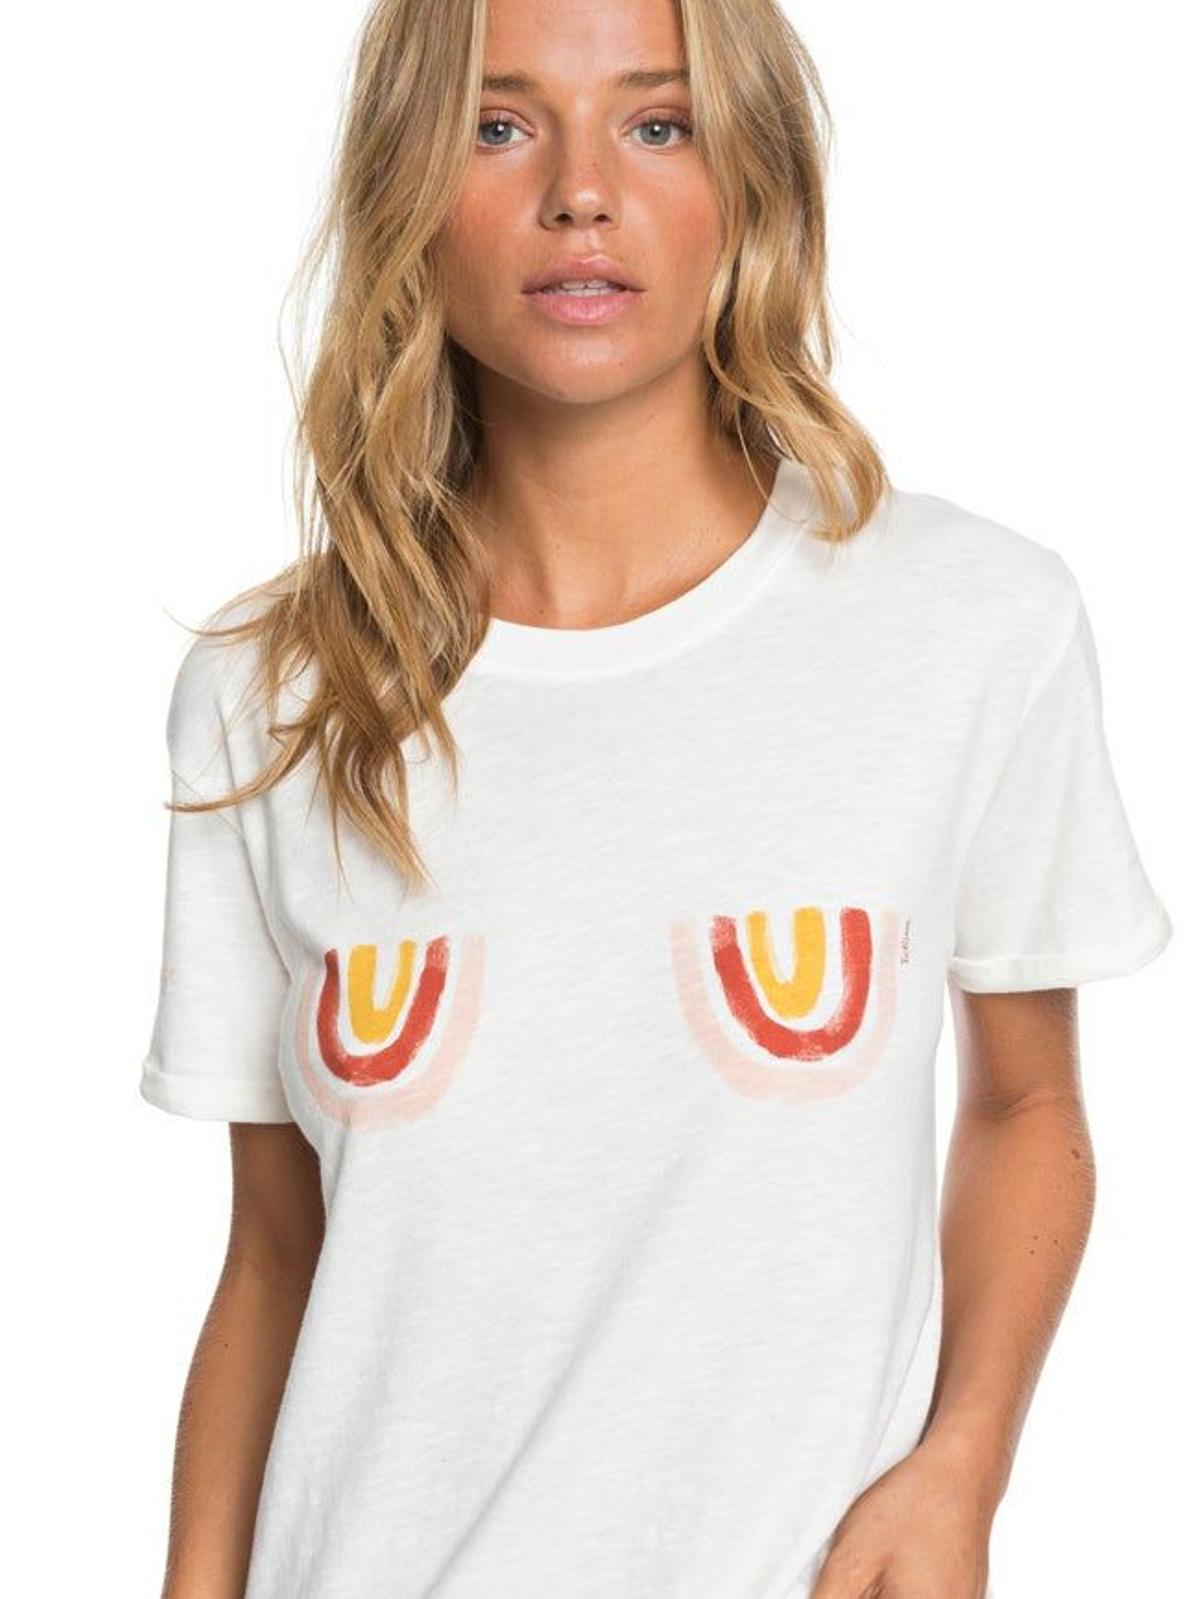 Camiseta x Keep A Breast de Roxy (Precio: 25,99 euros)